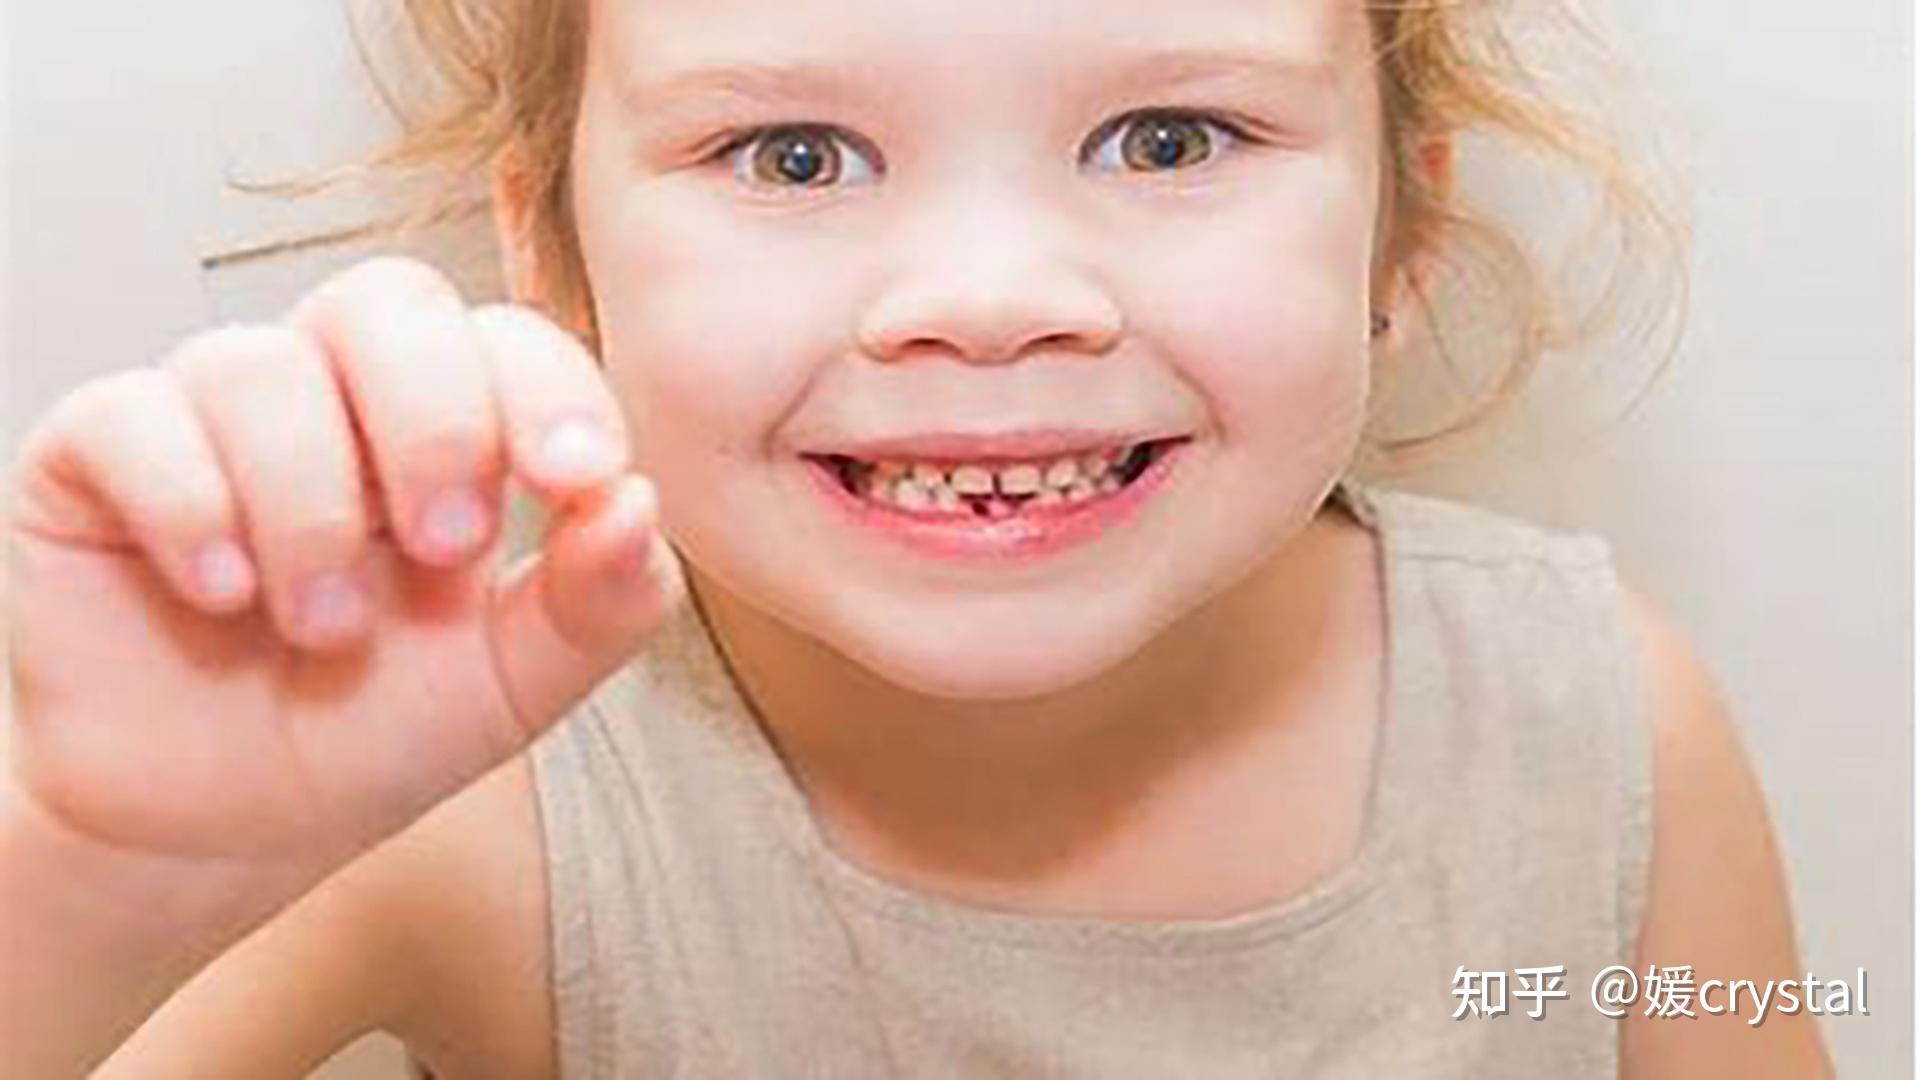 恒牙乳牙的替换规律图换牙顺序表（乳牙换恒牙，最早始于5岁） | 说明书网